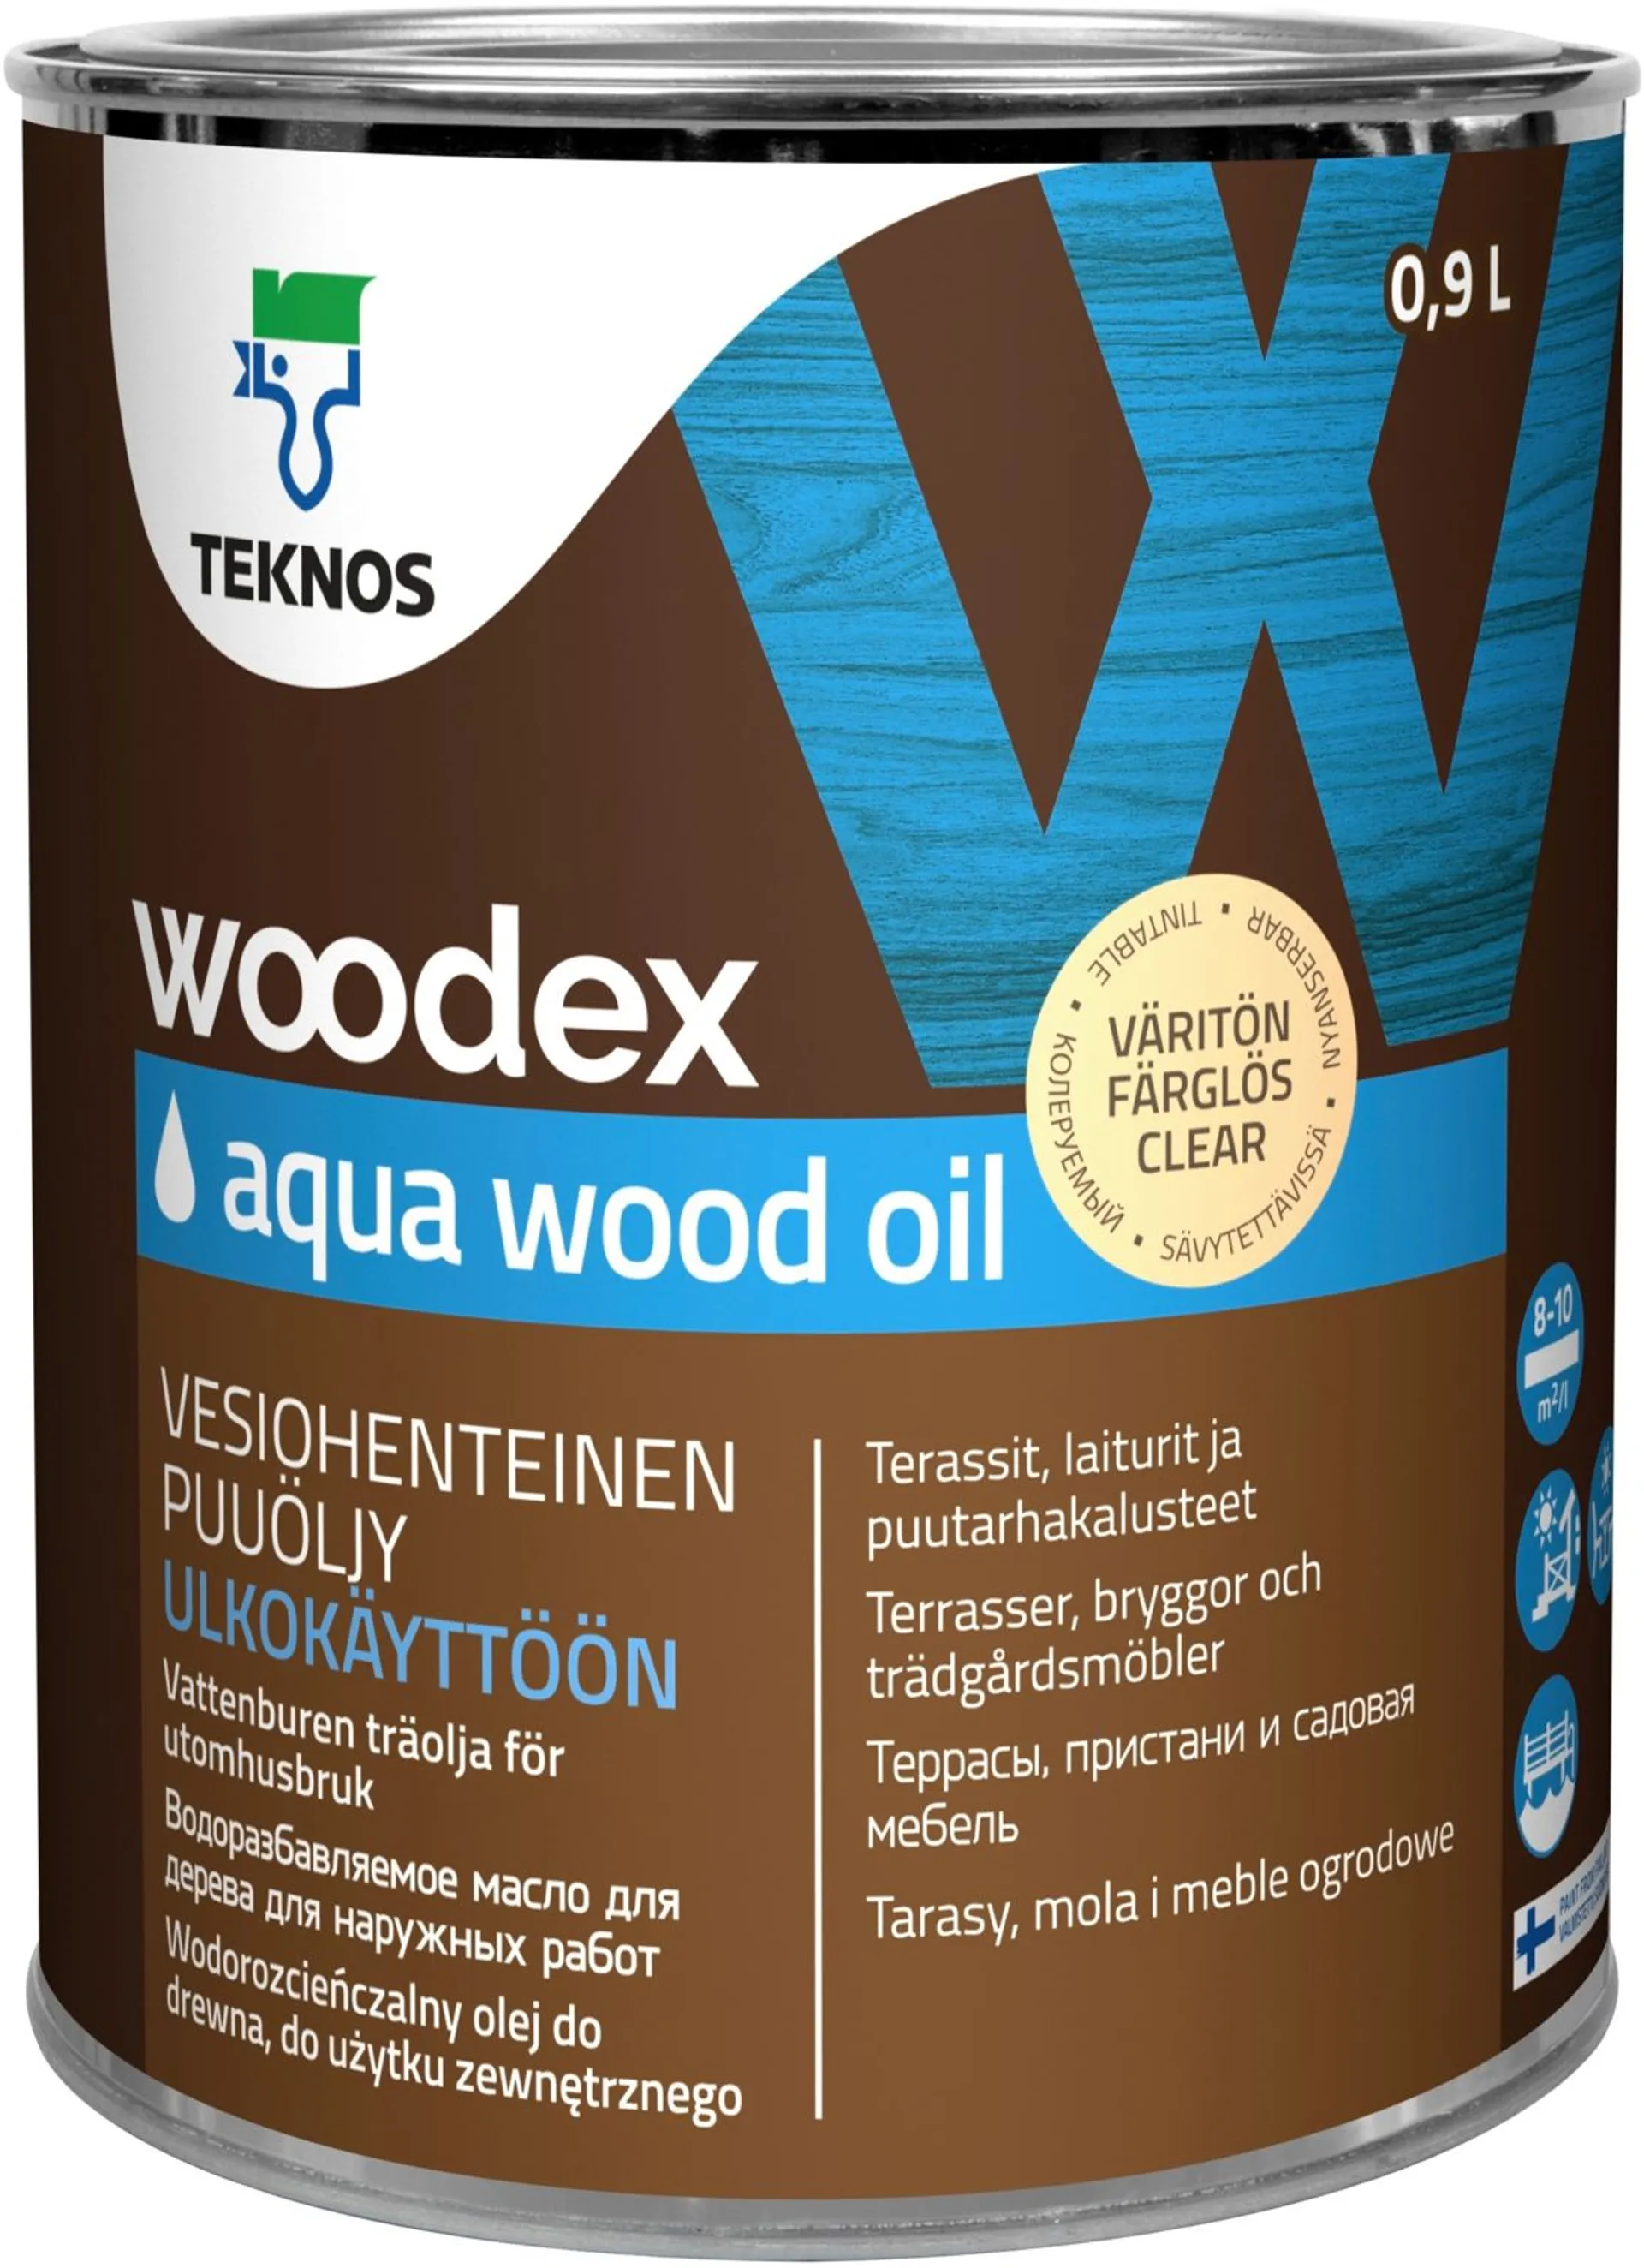 Teknos puuöljy Woodex Aqua Wood Oil 0,9 l väritön sävytettävä